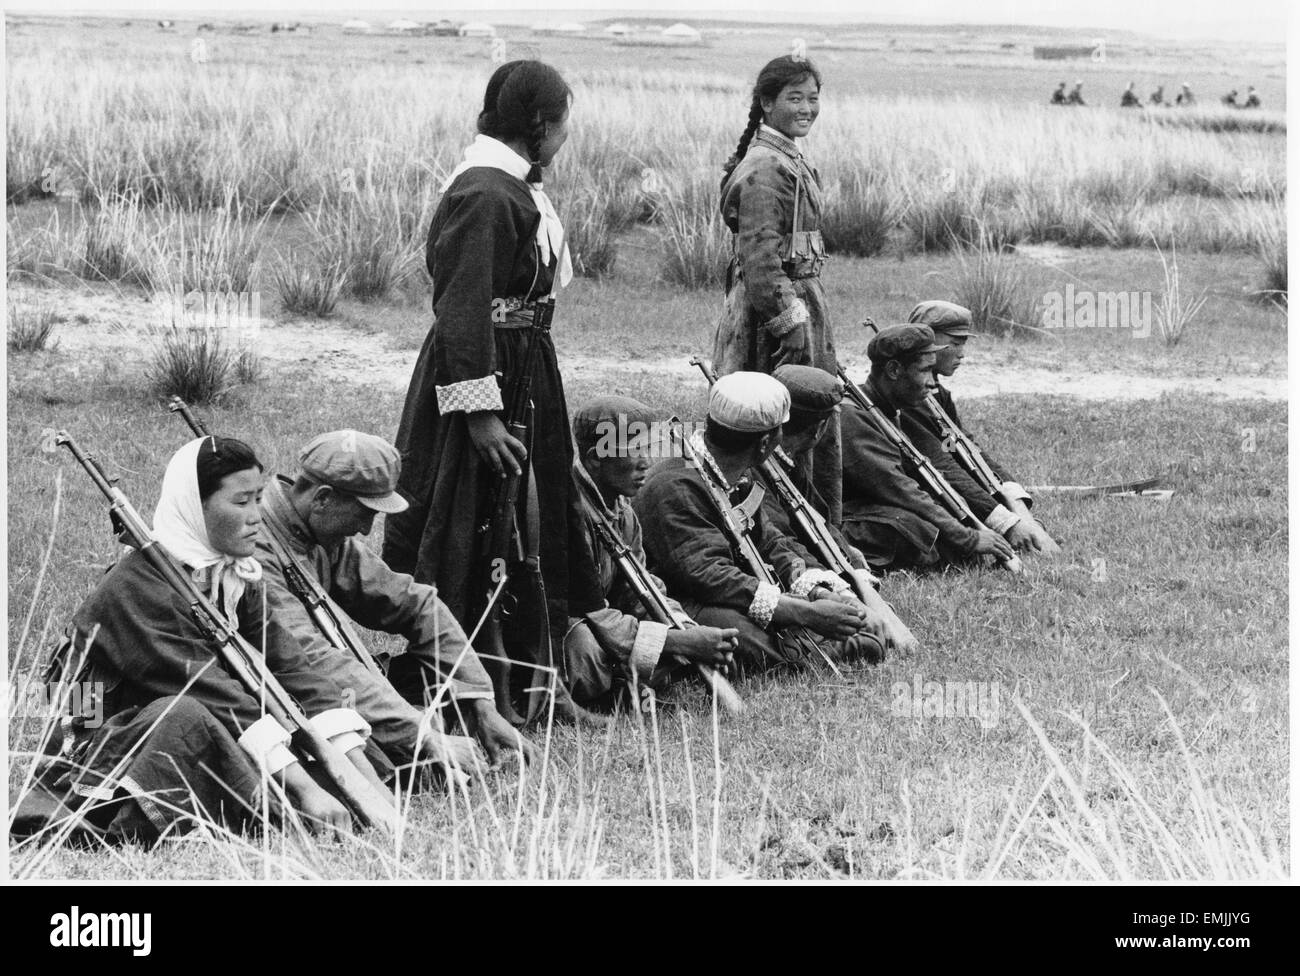 "L'équipe de la Milice dans Shilingala la Mongolie Intérieure", film encore, Film documentaire 'Rapport de la Chine", photo de Bob Kass, 1973 Banque D'Images